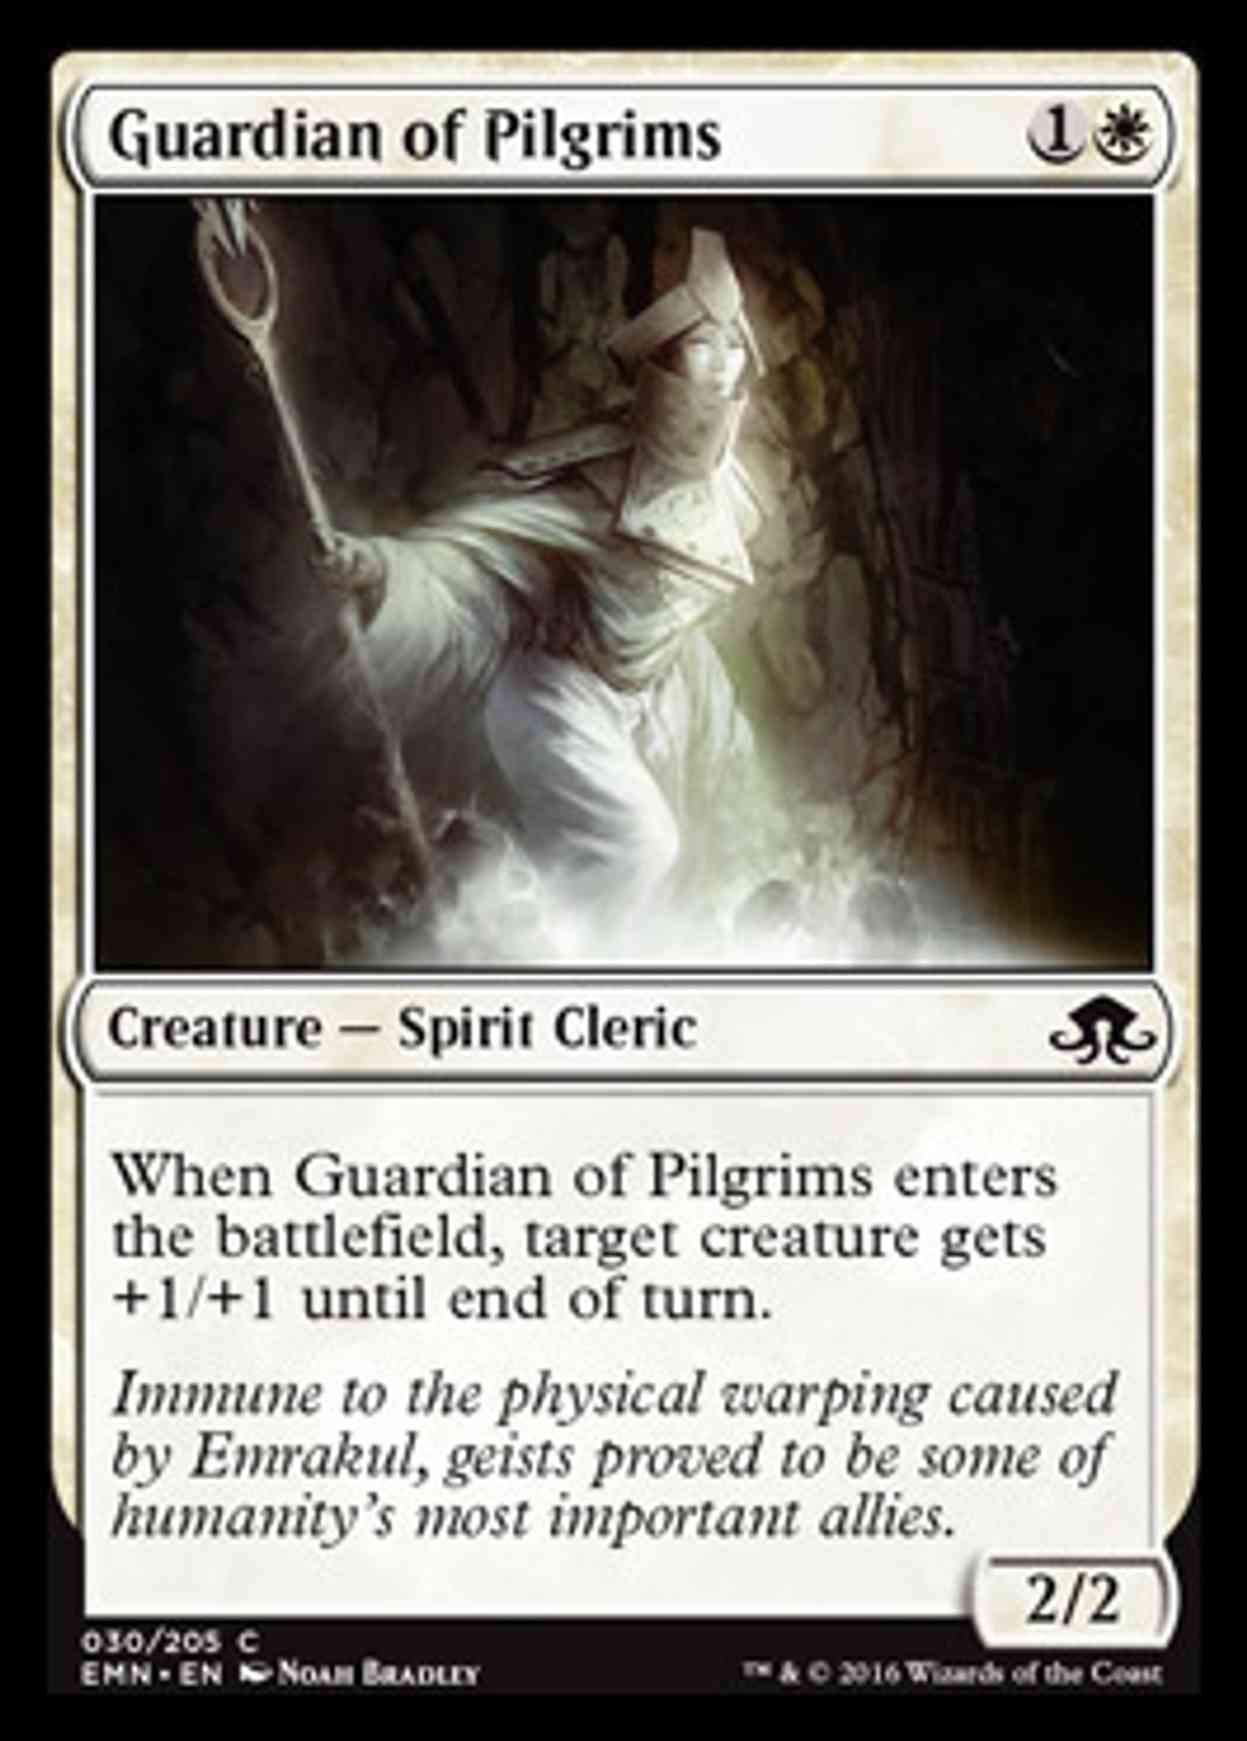 Guardian of Pilgrims magic card front